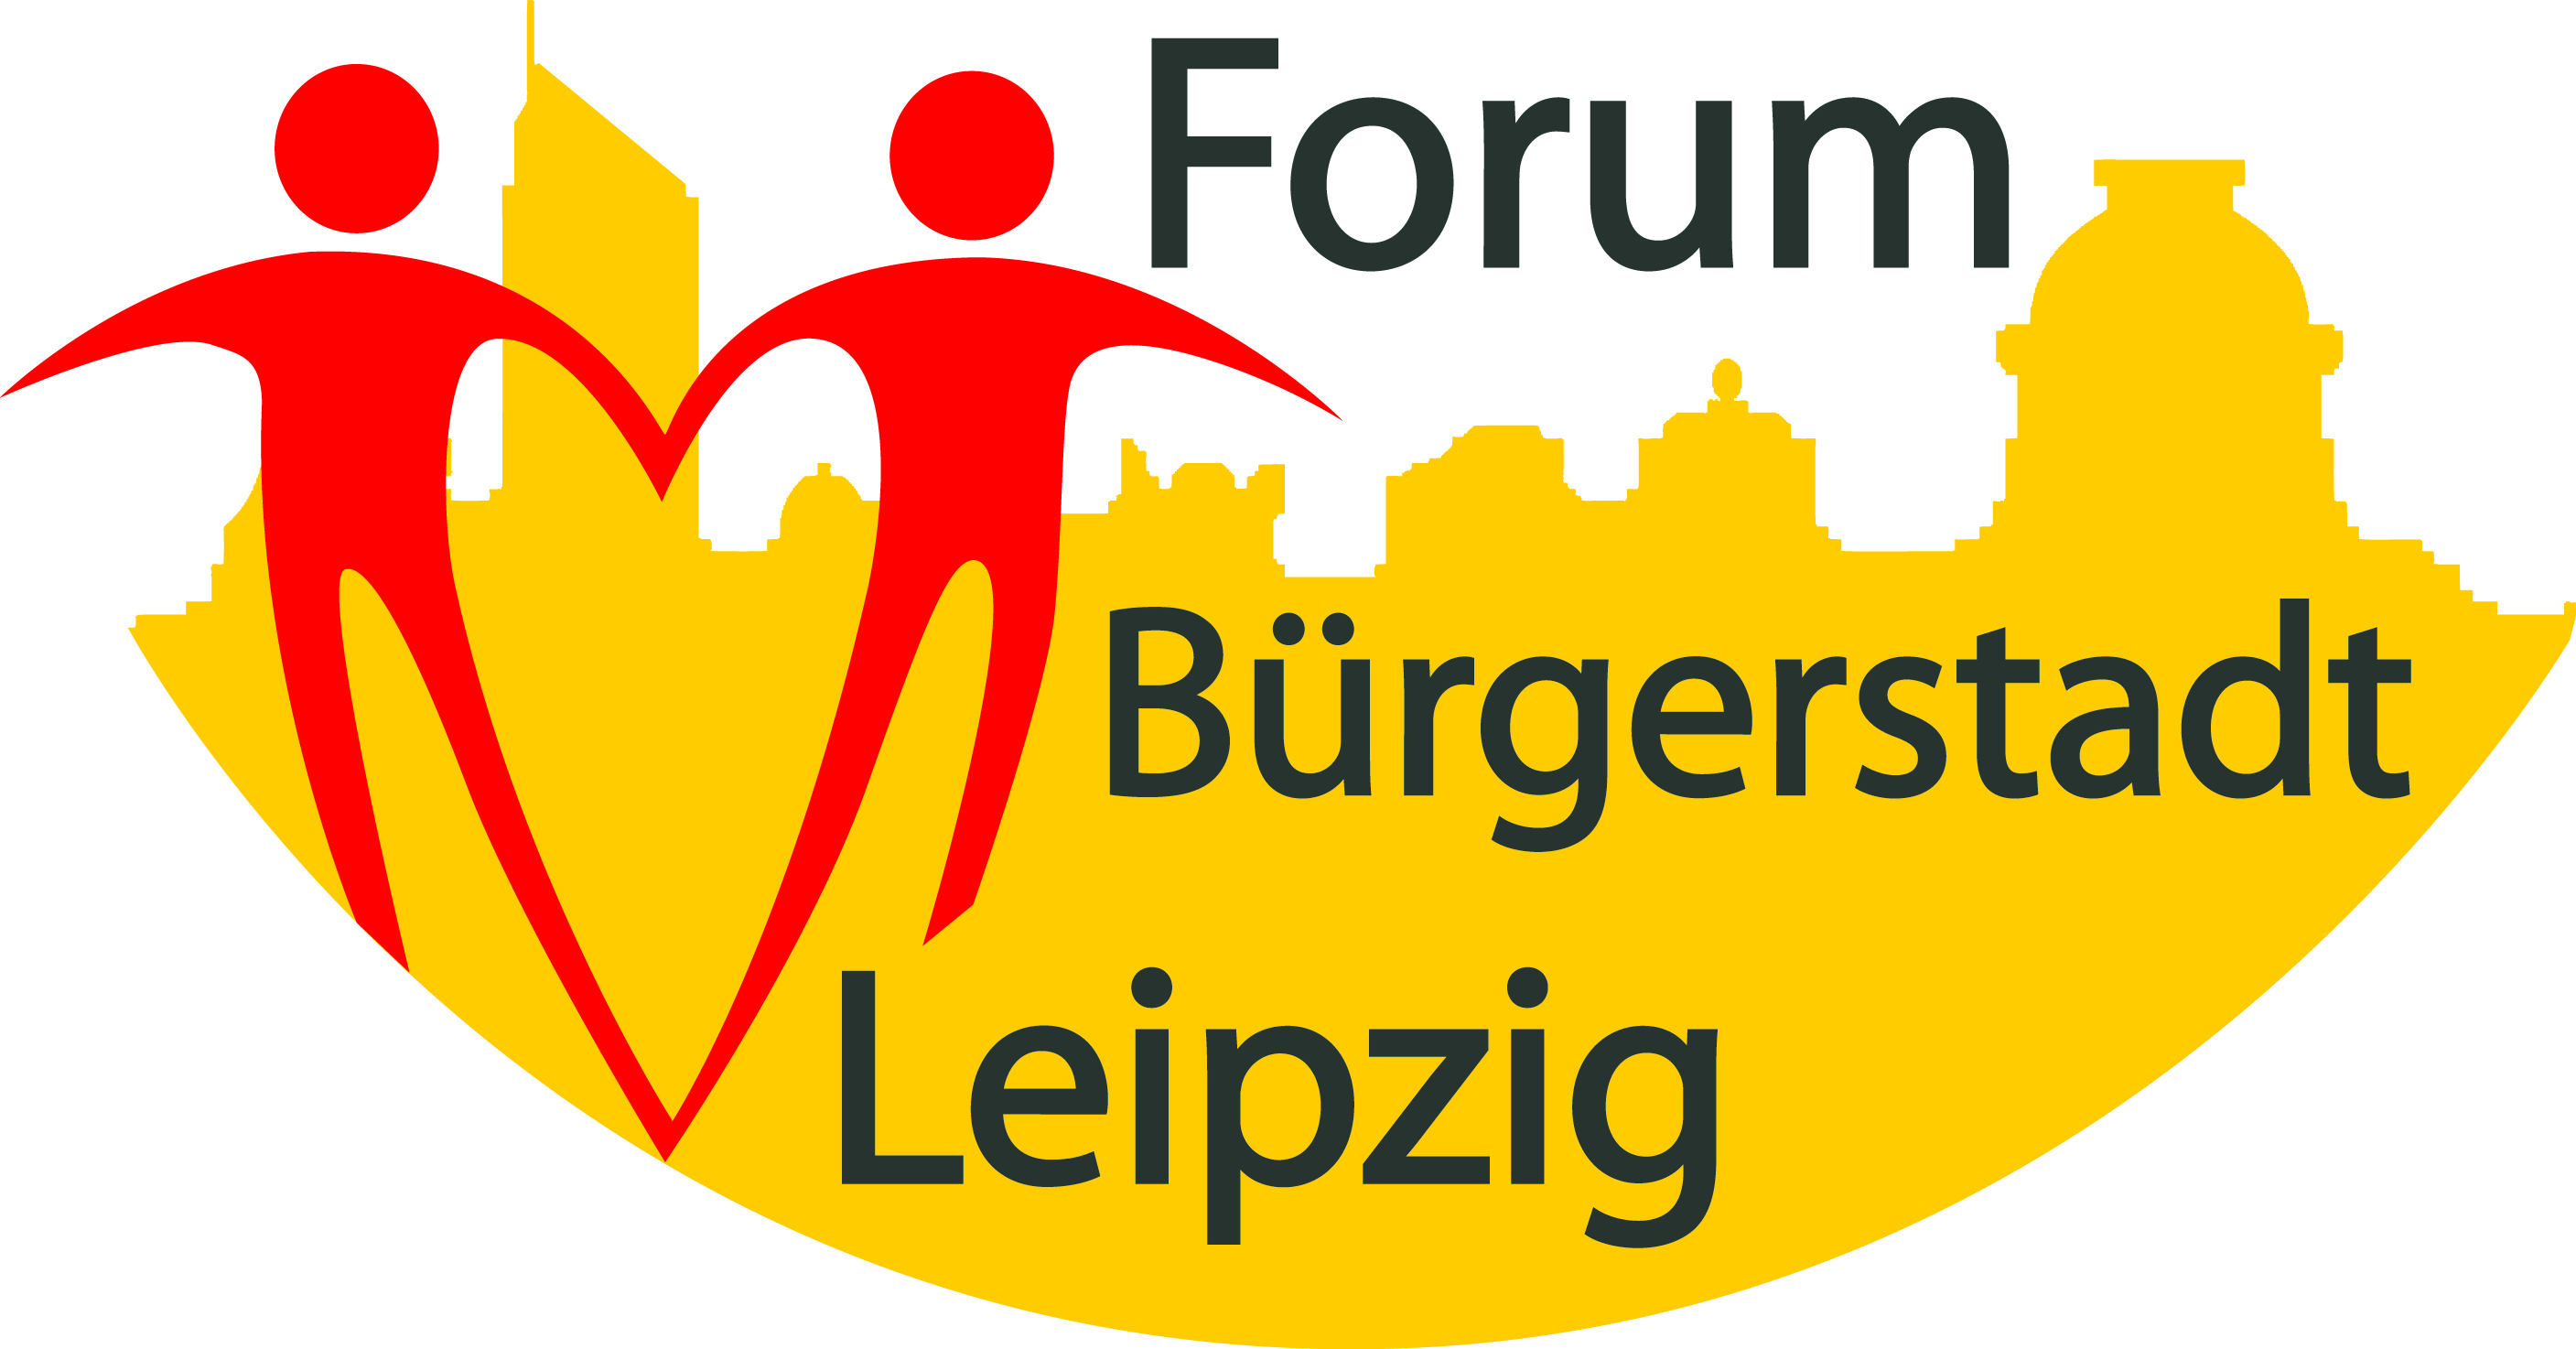 Forum Bürgerstadt zum "Jahr der Demokratie"